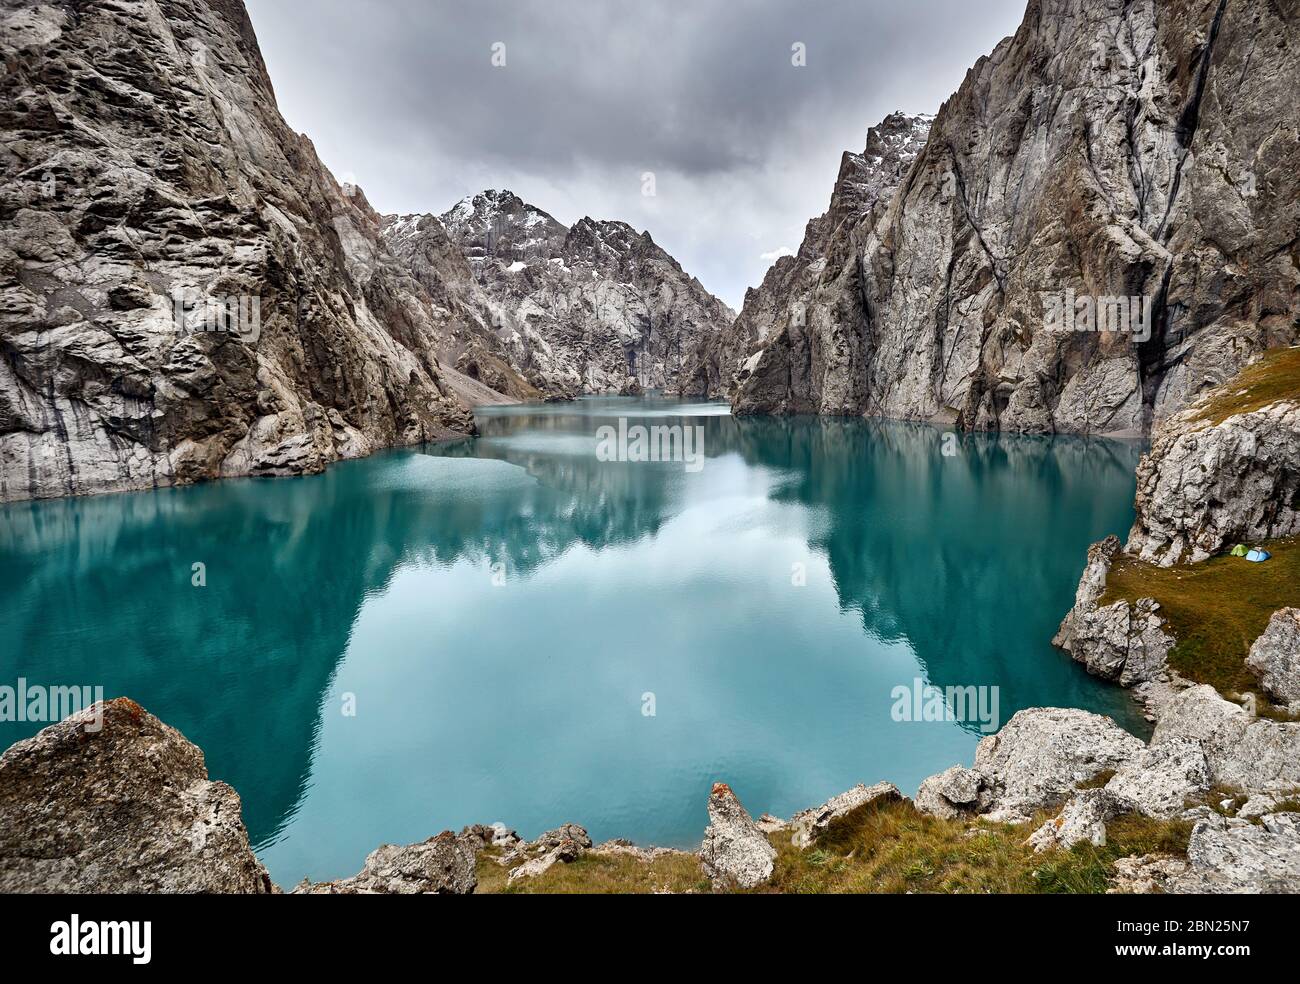 Schöne Landschaft des berühmten Berg See Kel Suu ist in der Nähe der chinesischen Grenze in Kirgisistan entfernt Stockfoto